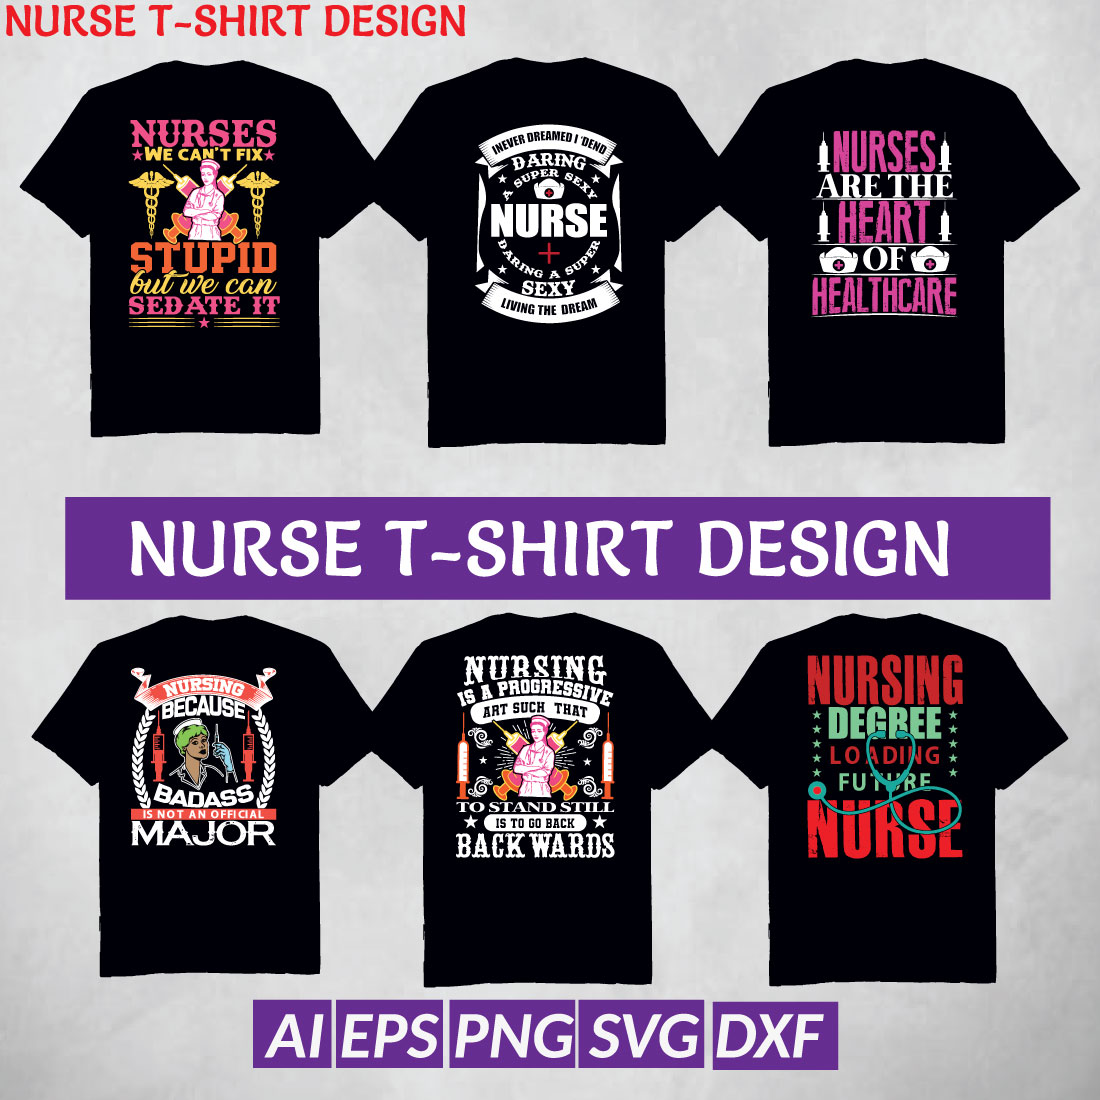 "Unique Nurse T-Shirt Design for Medical Professionals" preview image.